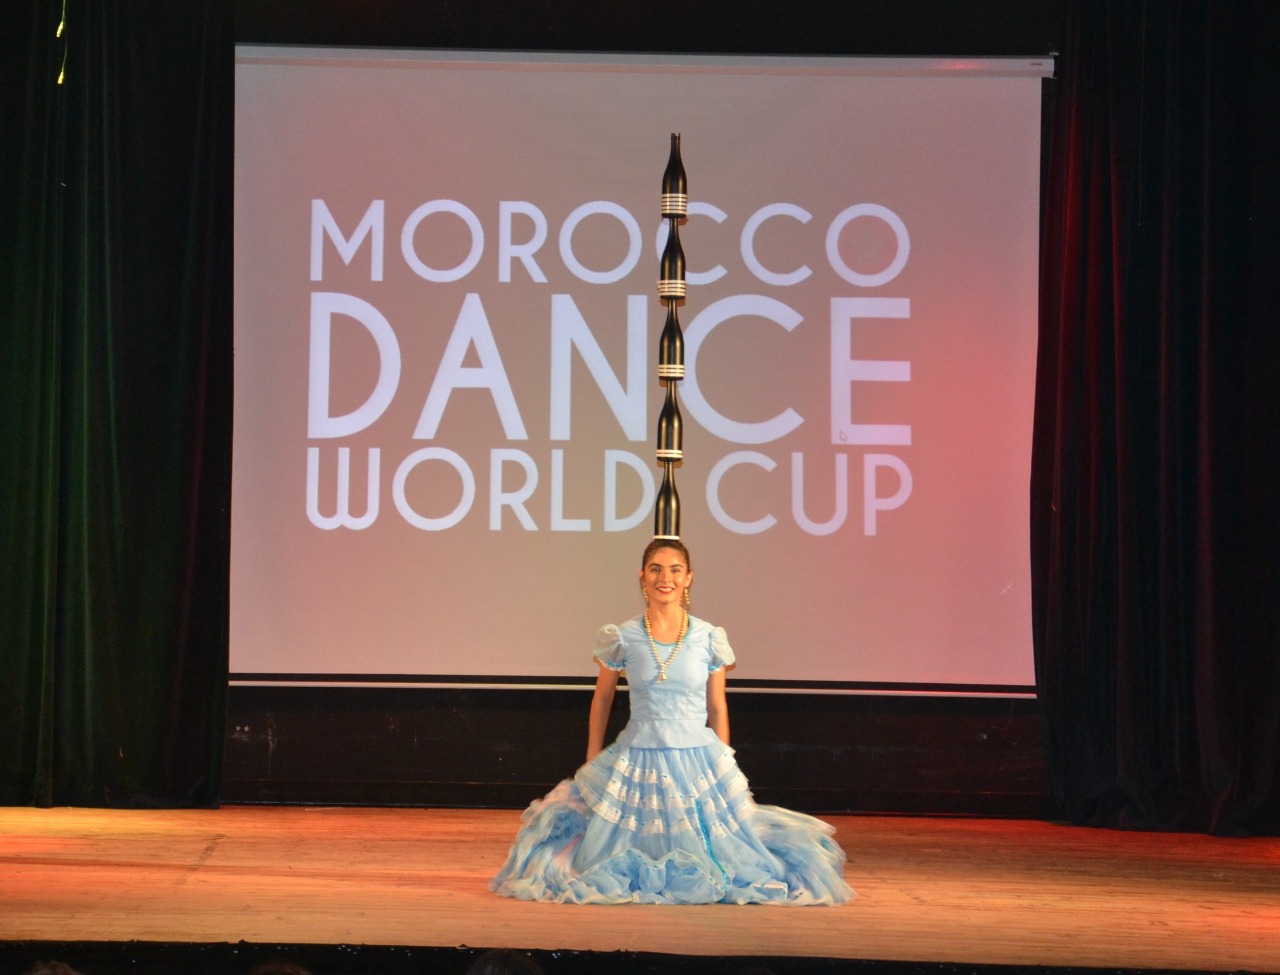 Paraguay obtuvo el primer puesto en la competencia internacional de danza realizada en Marruecos